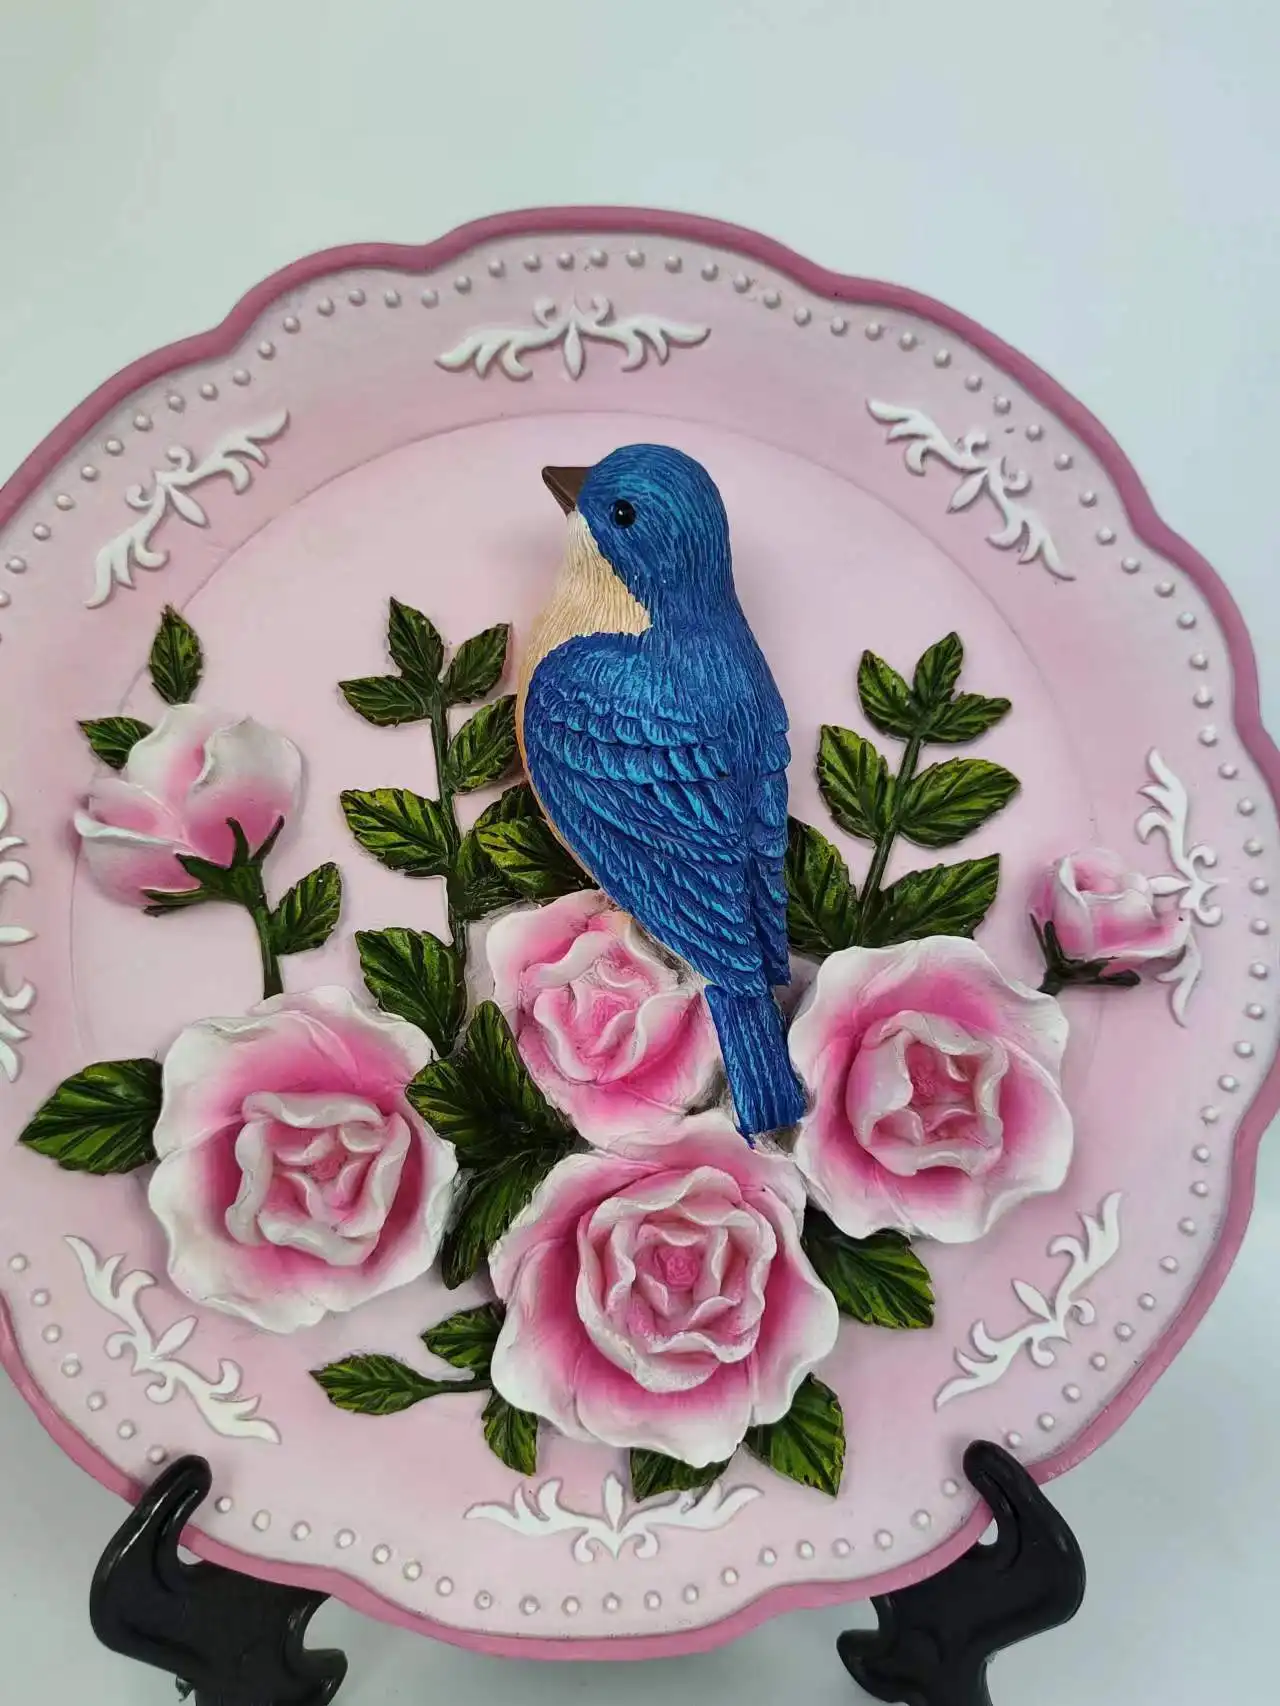 Piring bunga merah muda burung biru kualitas tinggi kreatif dengan dudukan untuk hadiah dekorasi meja rumah (tanpa dudukan)